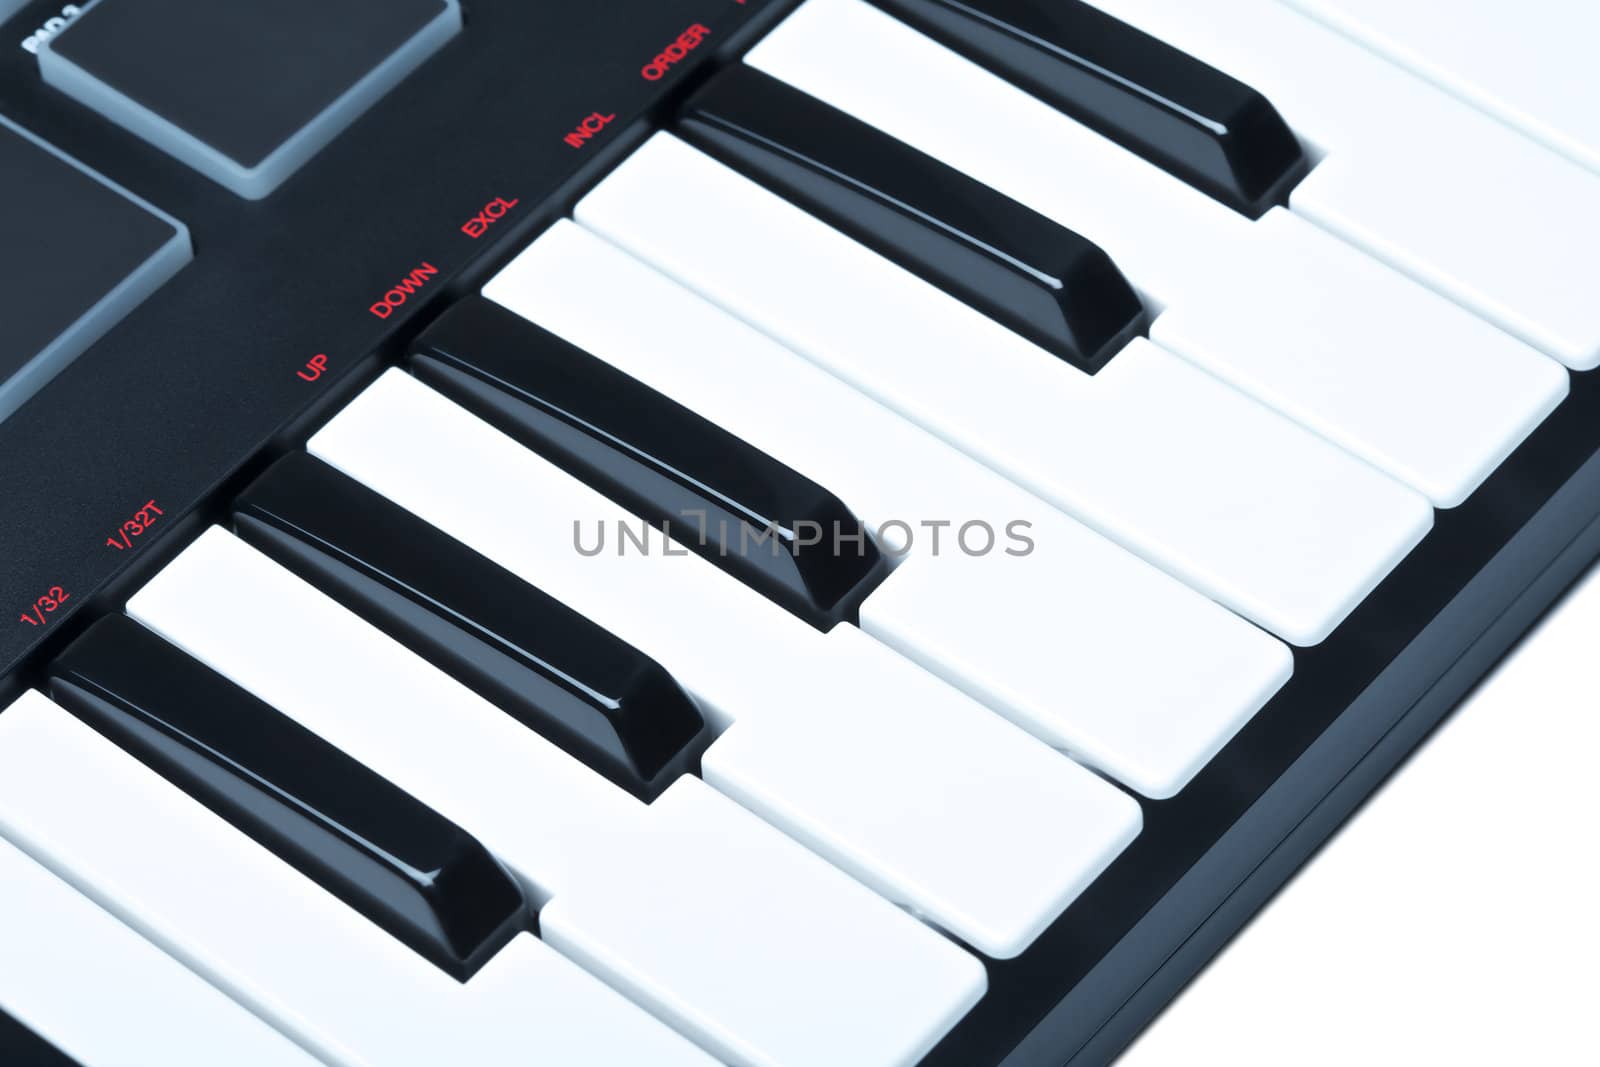 part of digital midi keyboard, close up